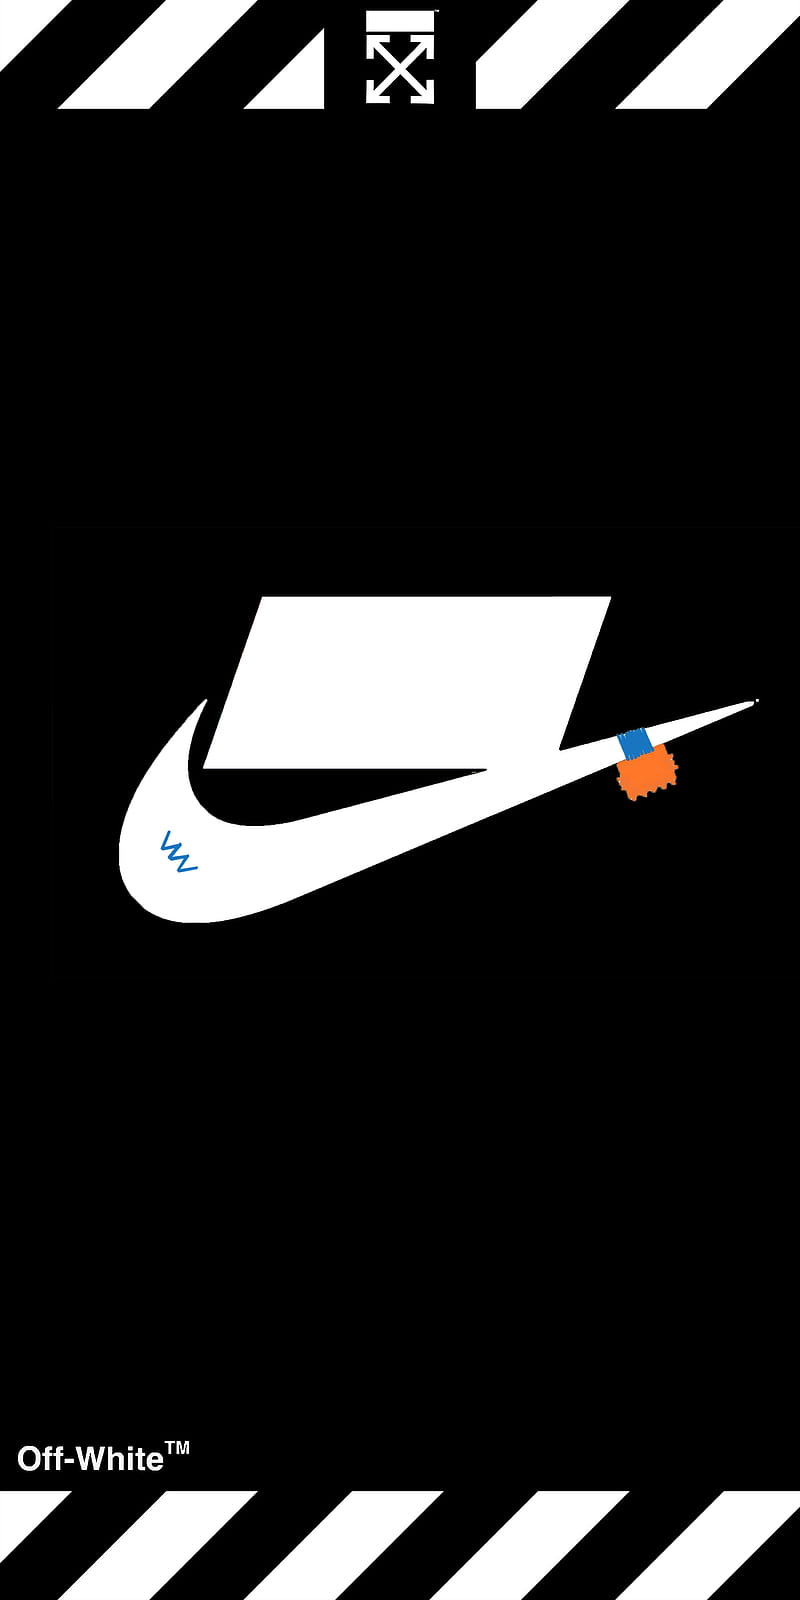 nike off white logo